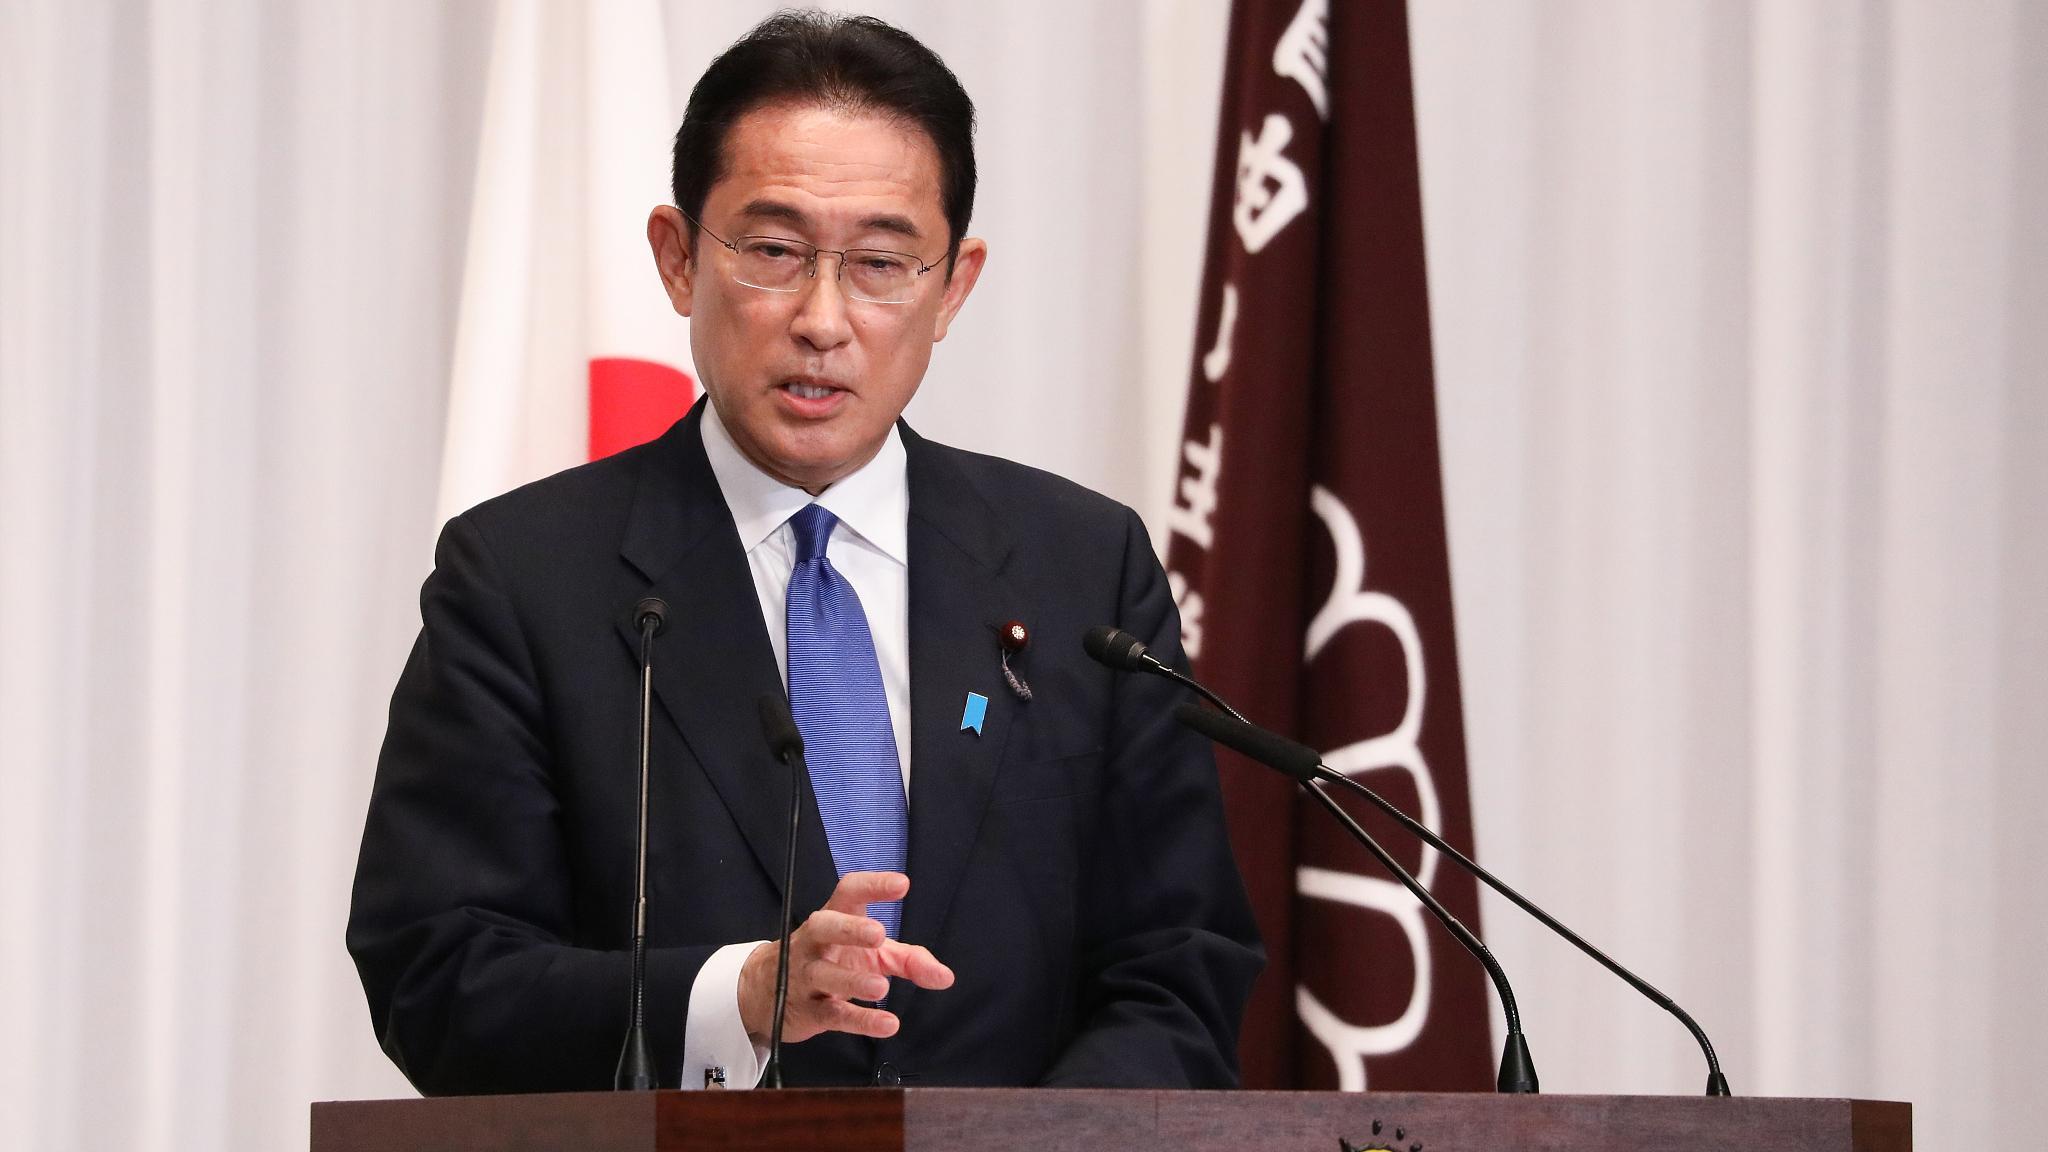 رئيس الوزراء الياباني يتعهد بتعزيز القدرات الدفاعية لبلاده خلال 5 سنوات -  بوابة الشروق - نسخة الموبايل